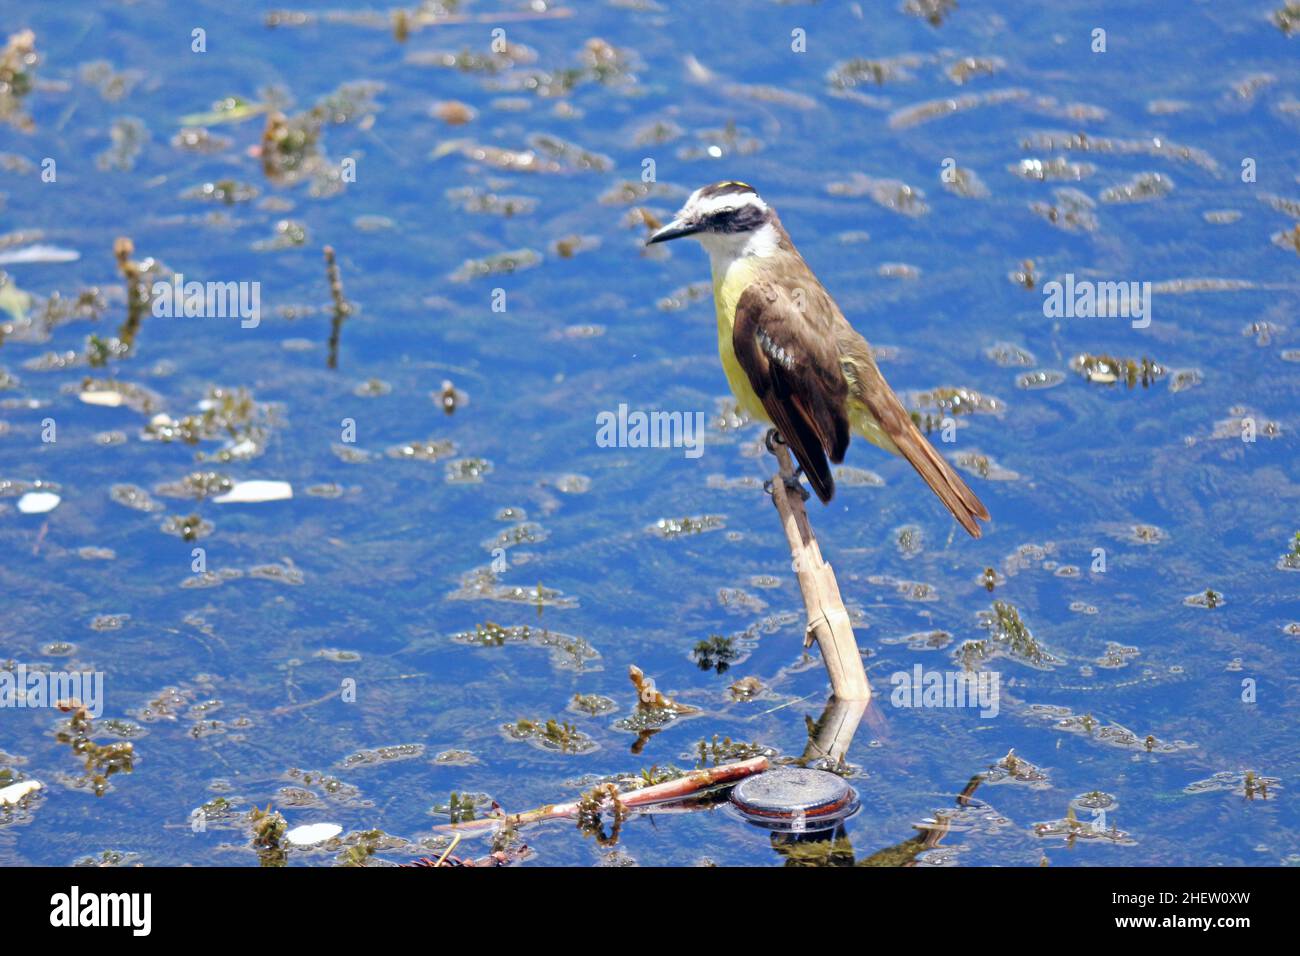 Auf einem Ast über dem Wasser der Lagune thront der ben-te-vi, einer der beliebtesten Vögel unseres Landes, und beobachtet seinen städtischen Lebensraum. Stockfoto